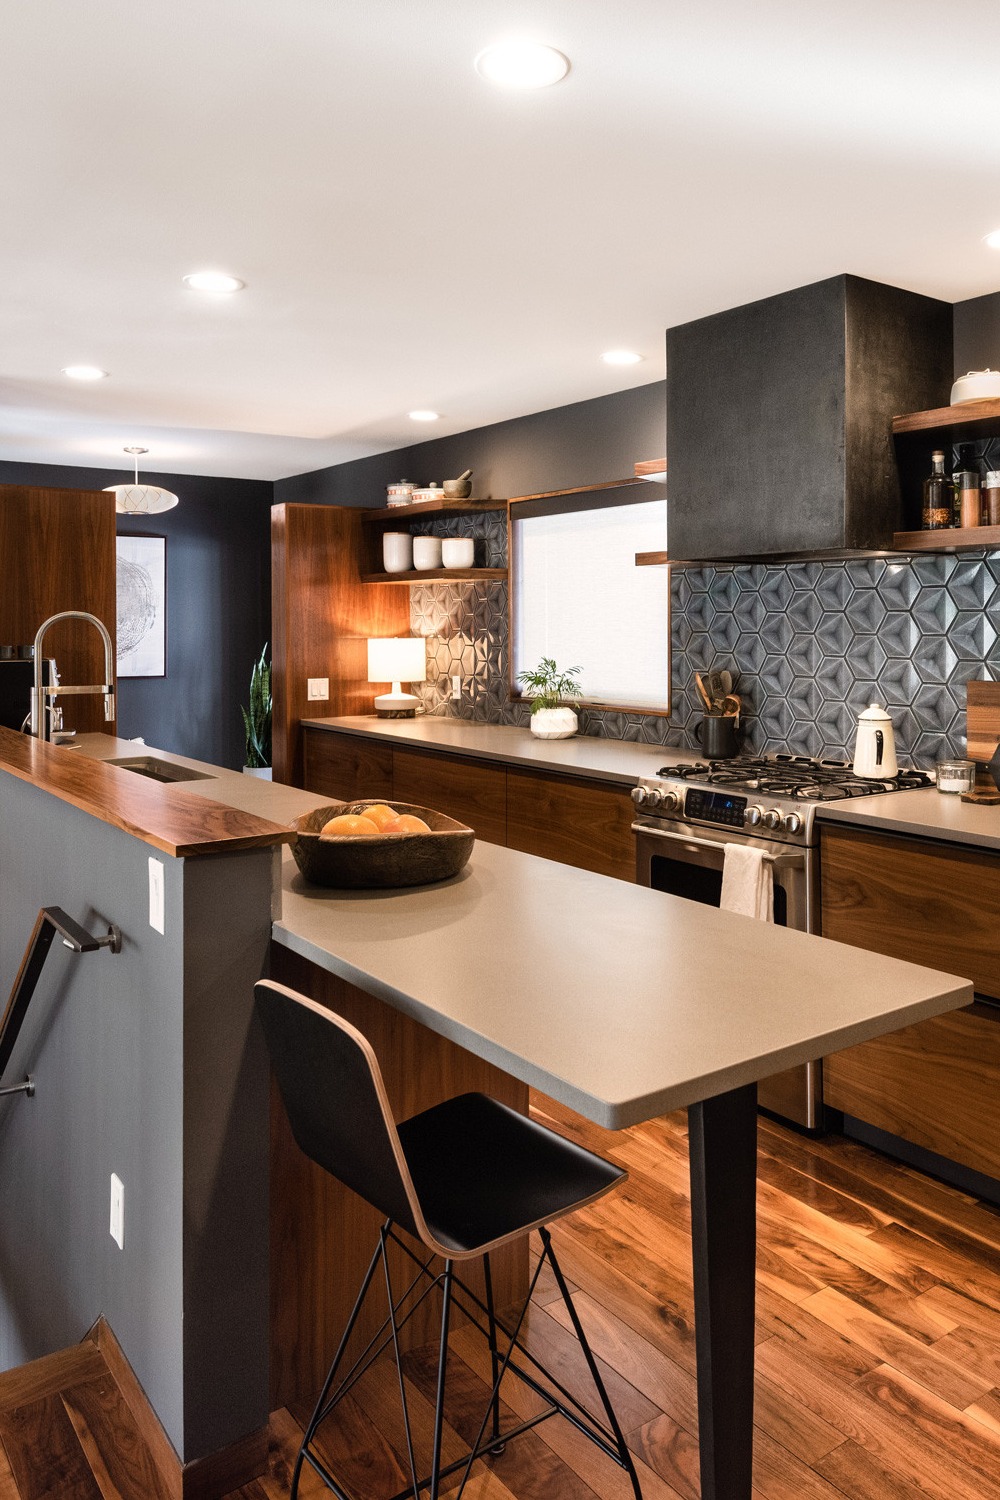 Kitchens Interior Designer Trends 2023 Materials Wood Backsplashes Lighting Cabinetry Details